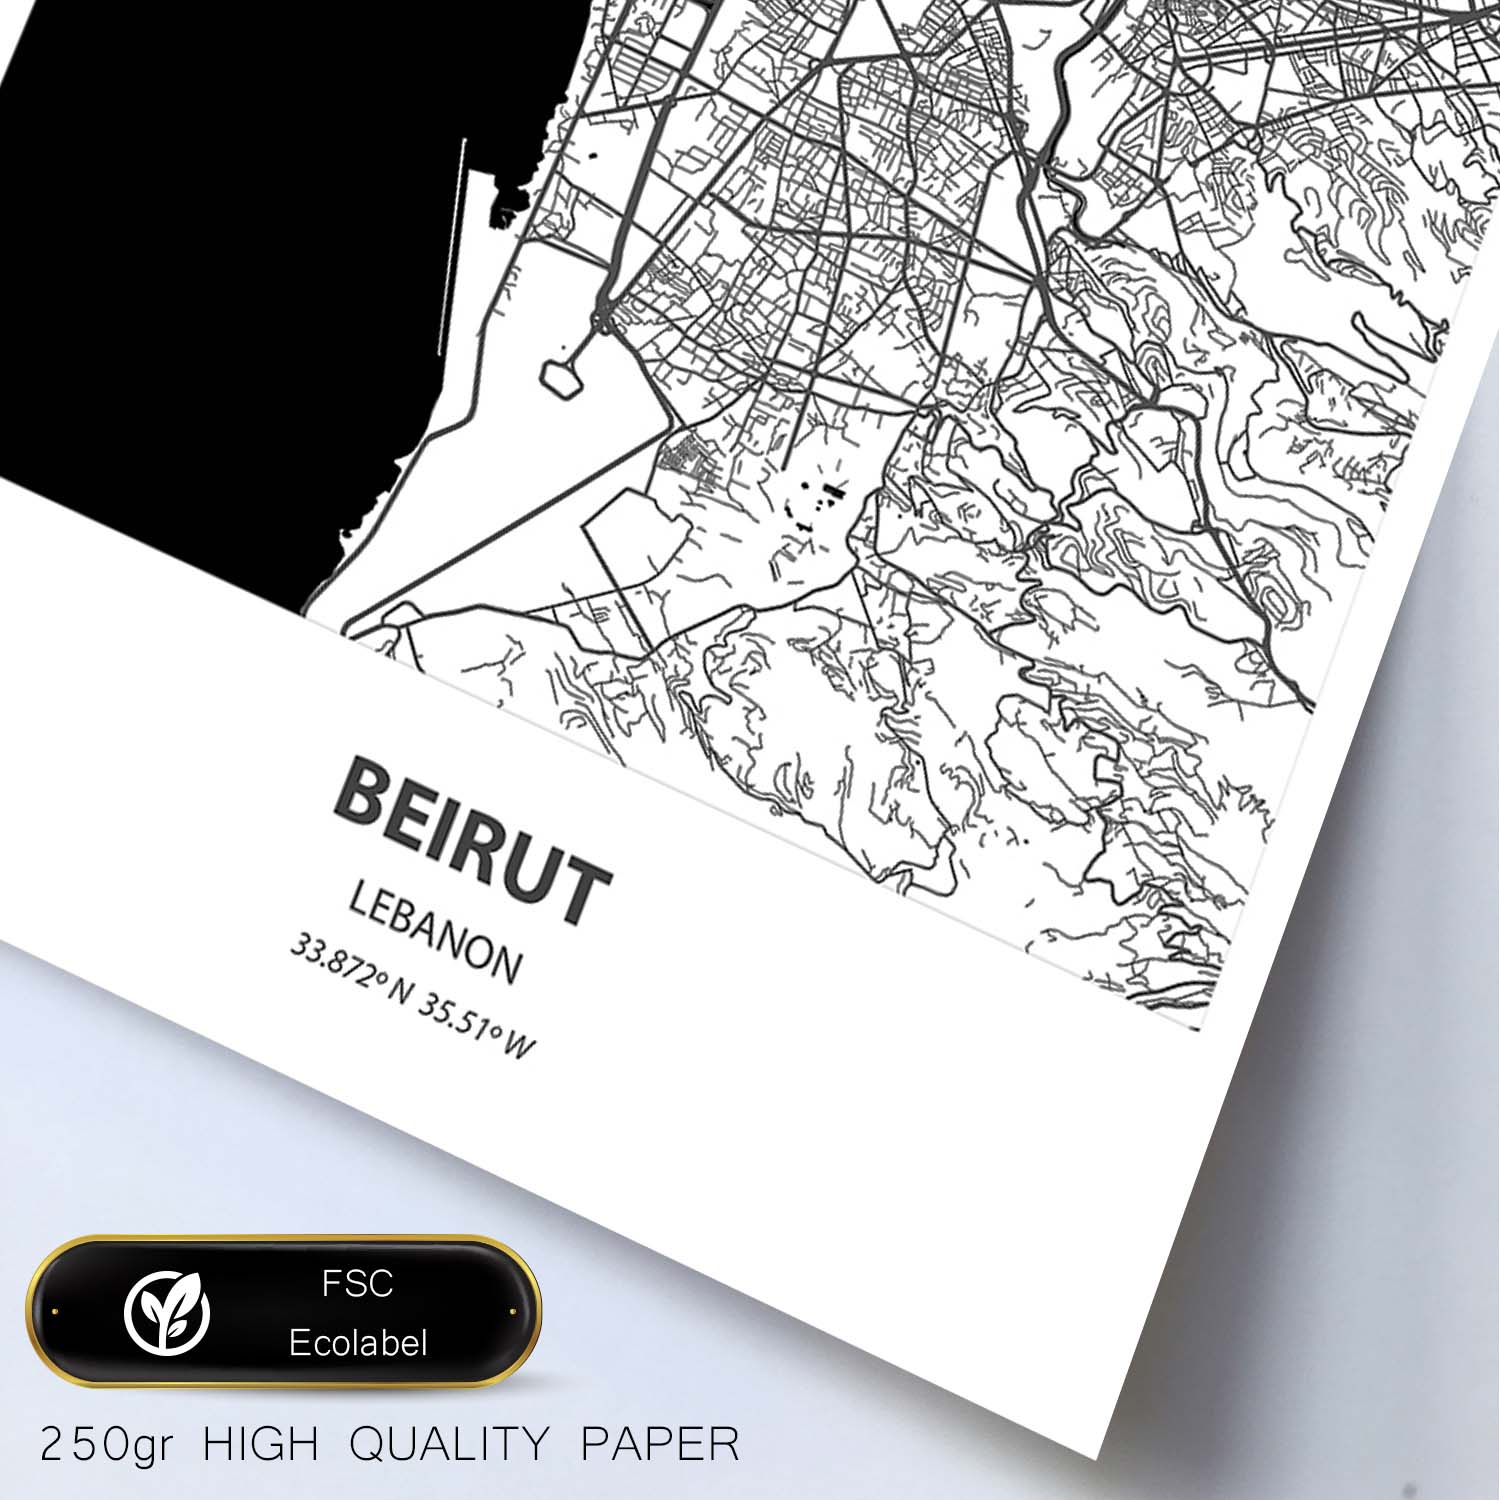 Poster con mapa de Beirut - Libano. Láminas de ciudades de África con mares y ríos en color negro.-Artwork-Nacnic-Nacnic Estudio SL